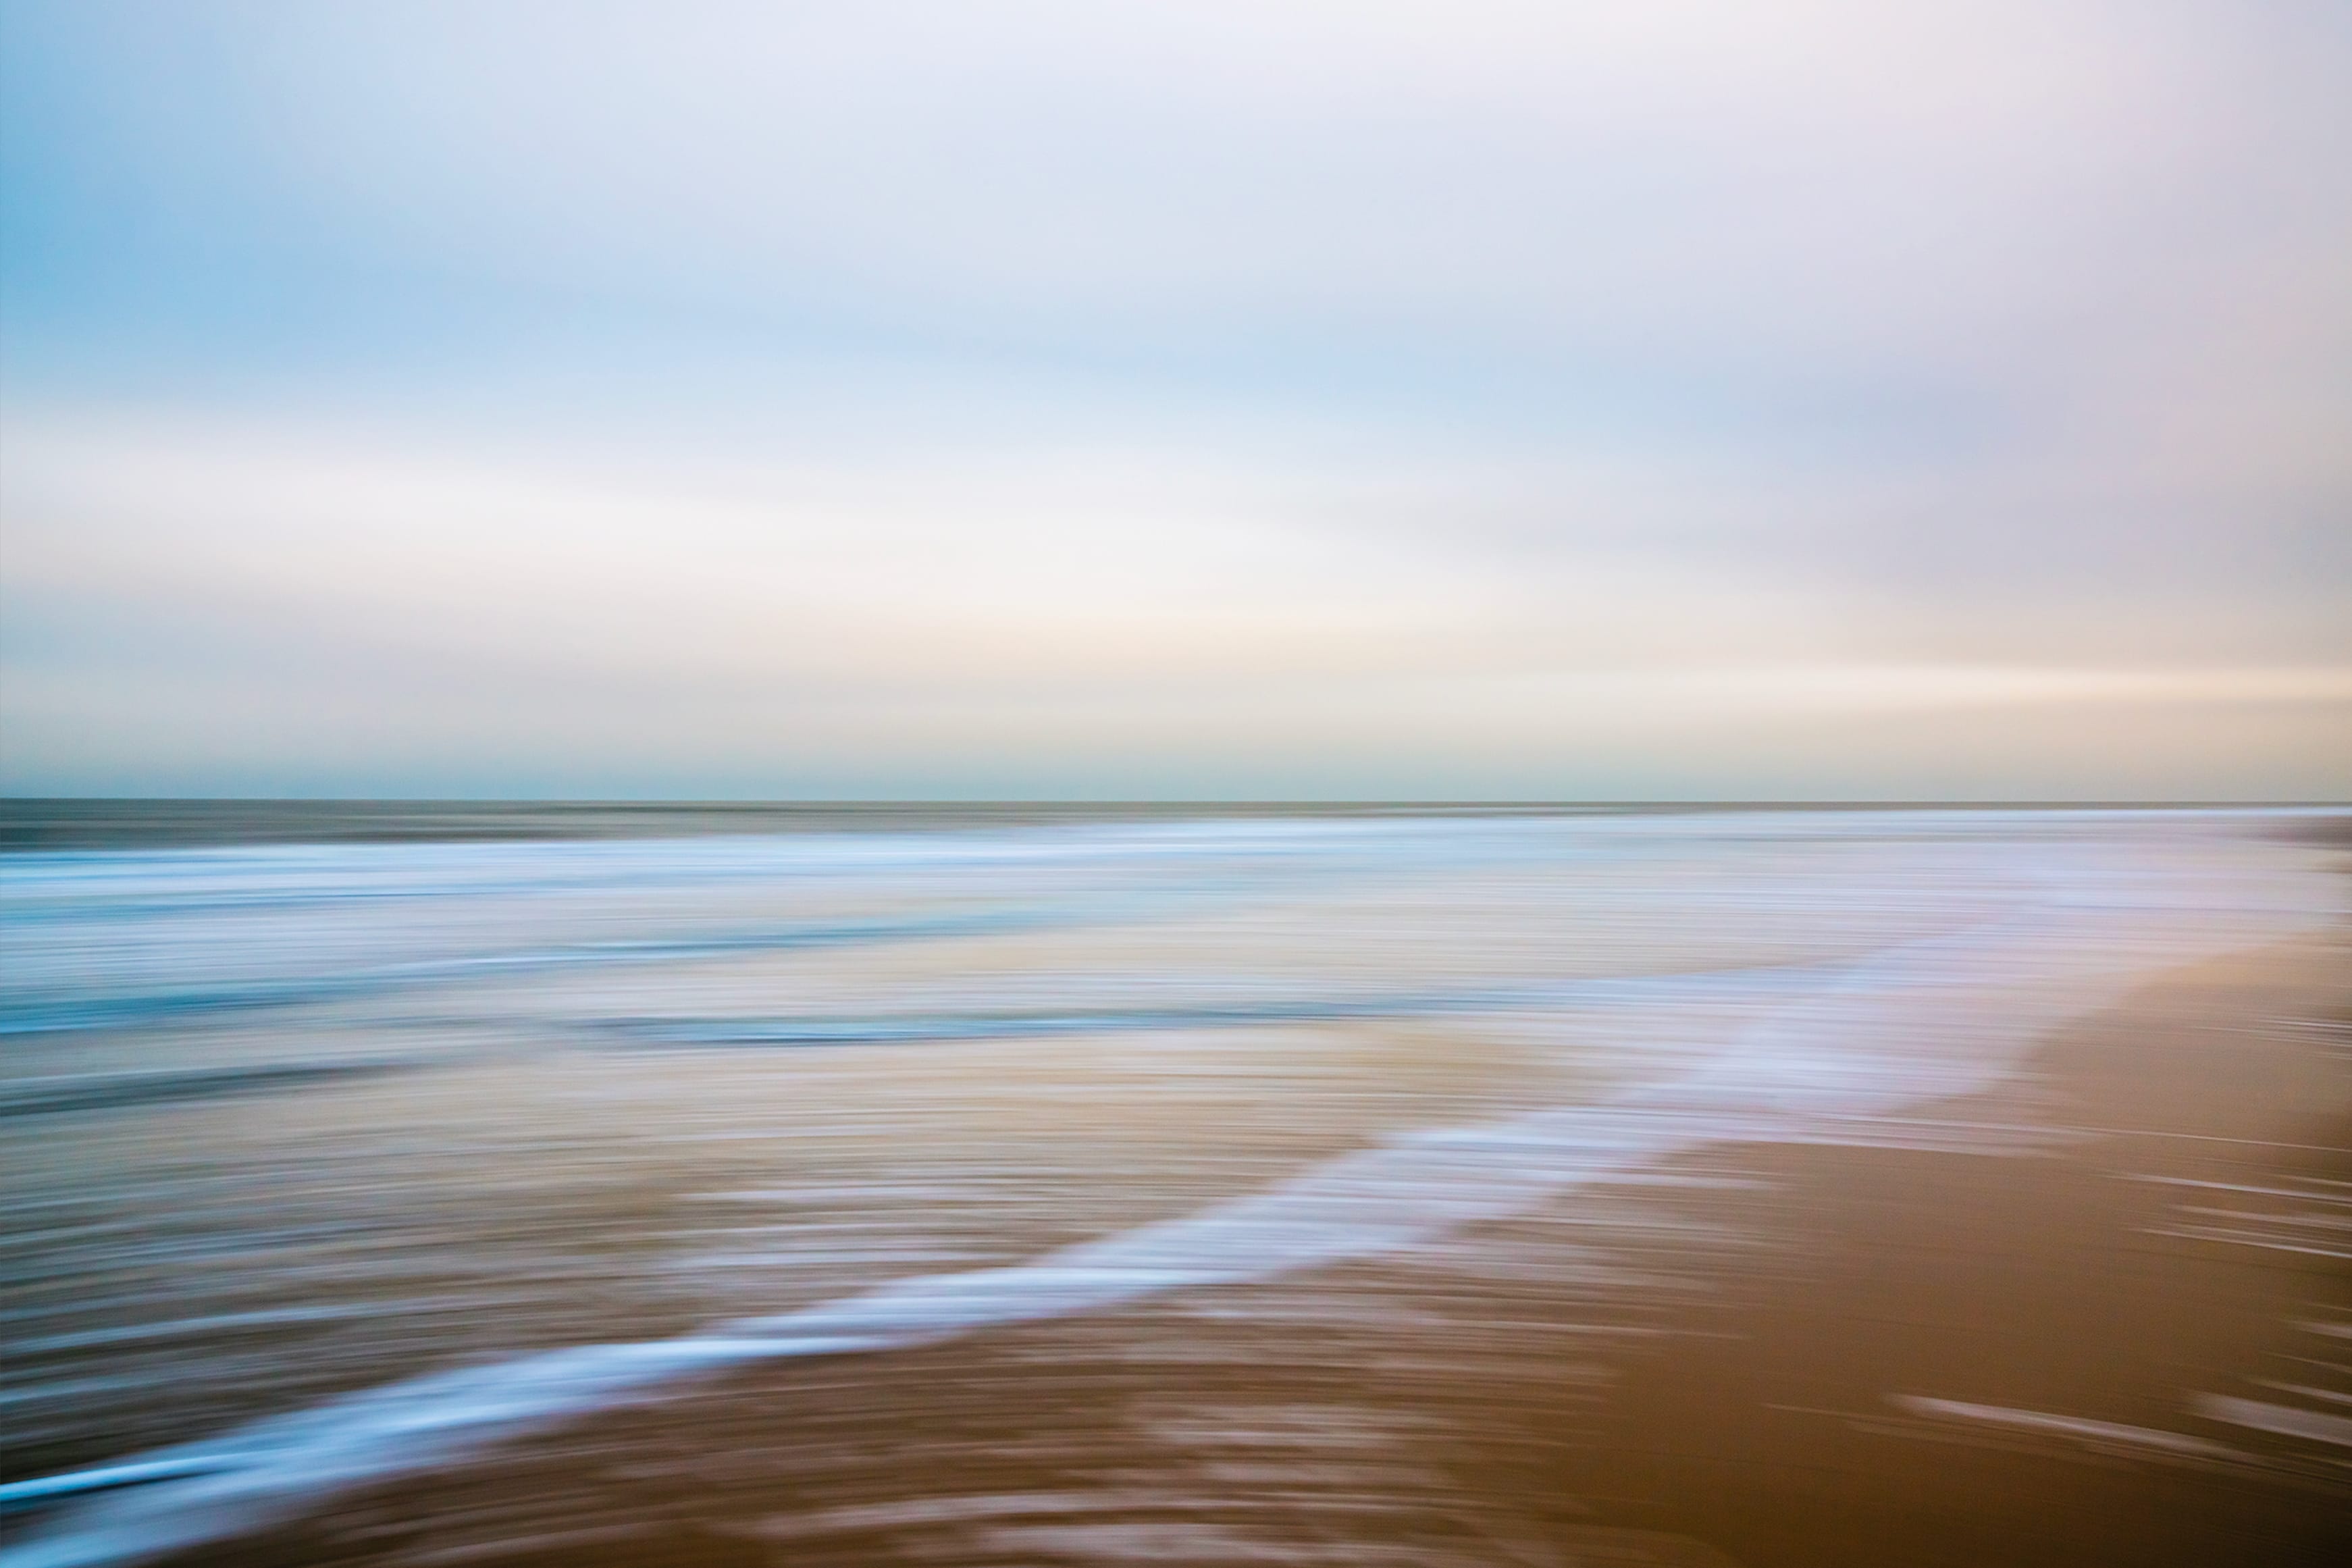 Espace, nostalgie, calme, mouvement, Martin C. Schmidt photographie abstraite plage au crépuscule avec flou de mouvement